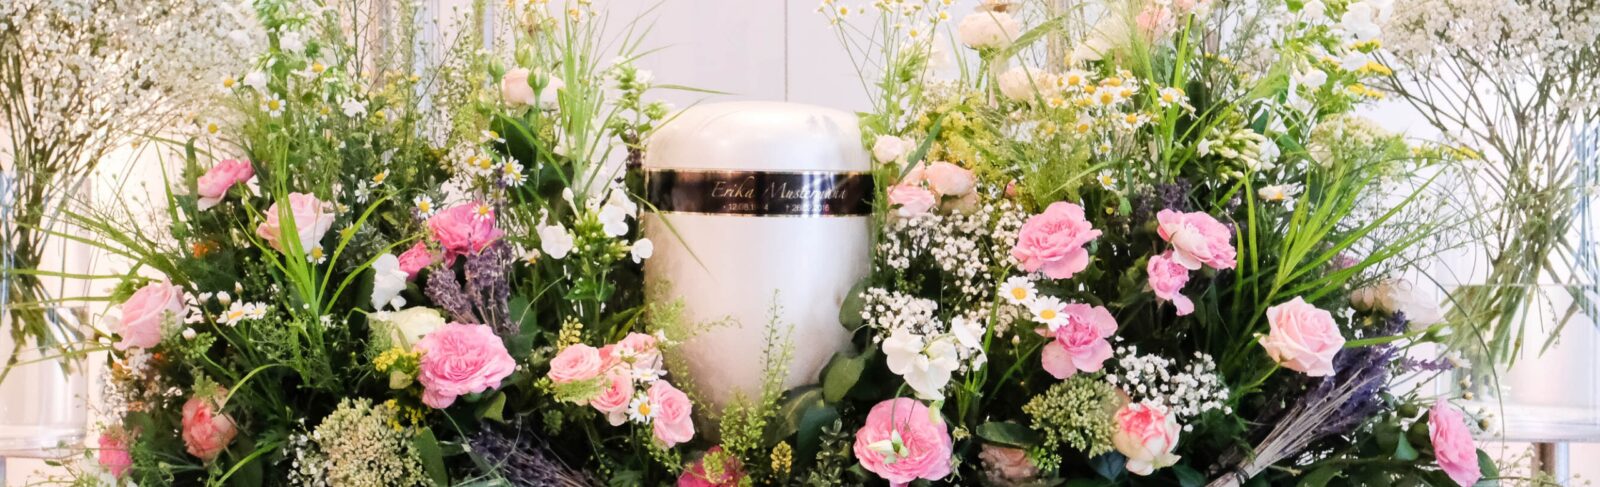 GBI Hamburg Bestatter Moderne Urne auf einen rosafarbenen Blumengesteck